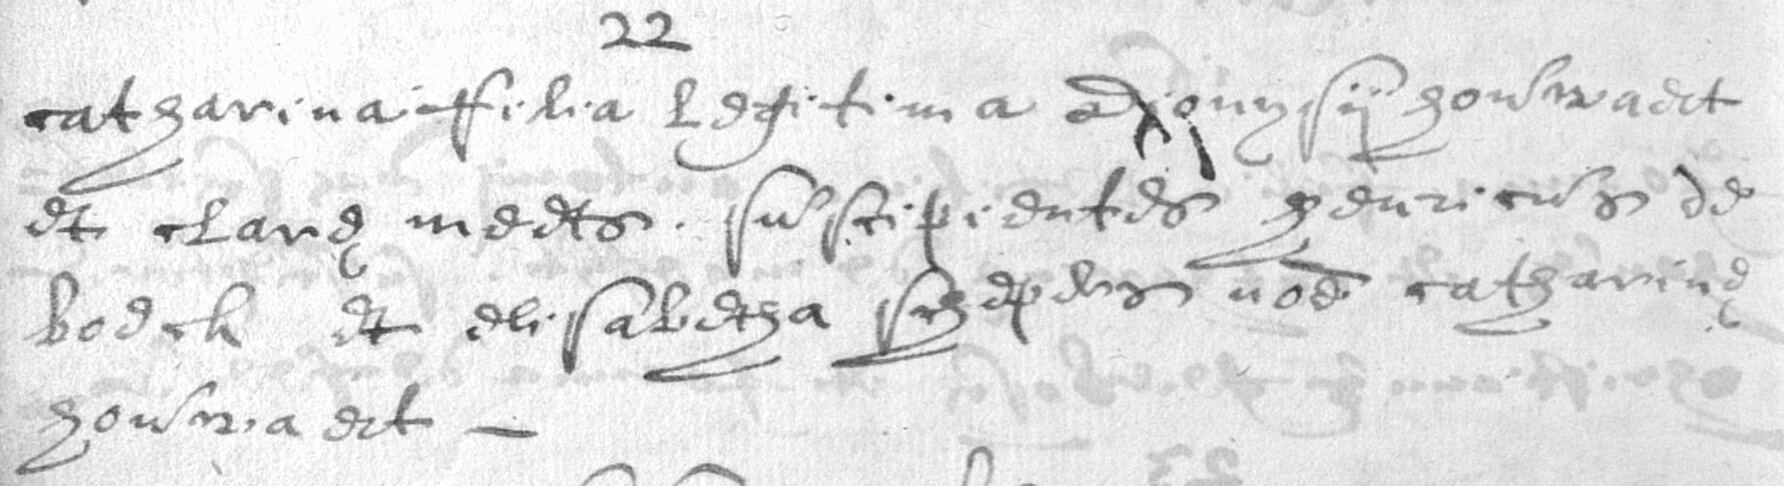 1660-CatharinaHauwaert22Aug1660DionysiusHauwaertClaraMeerts.jpg